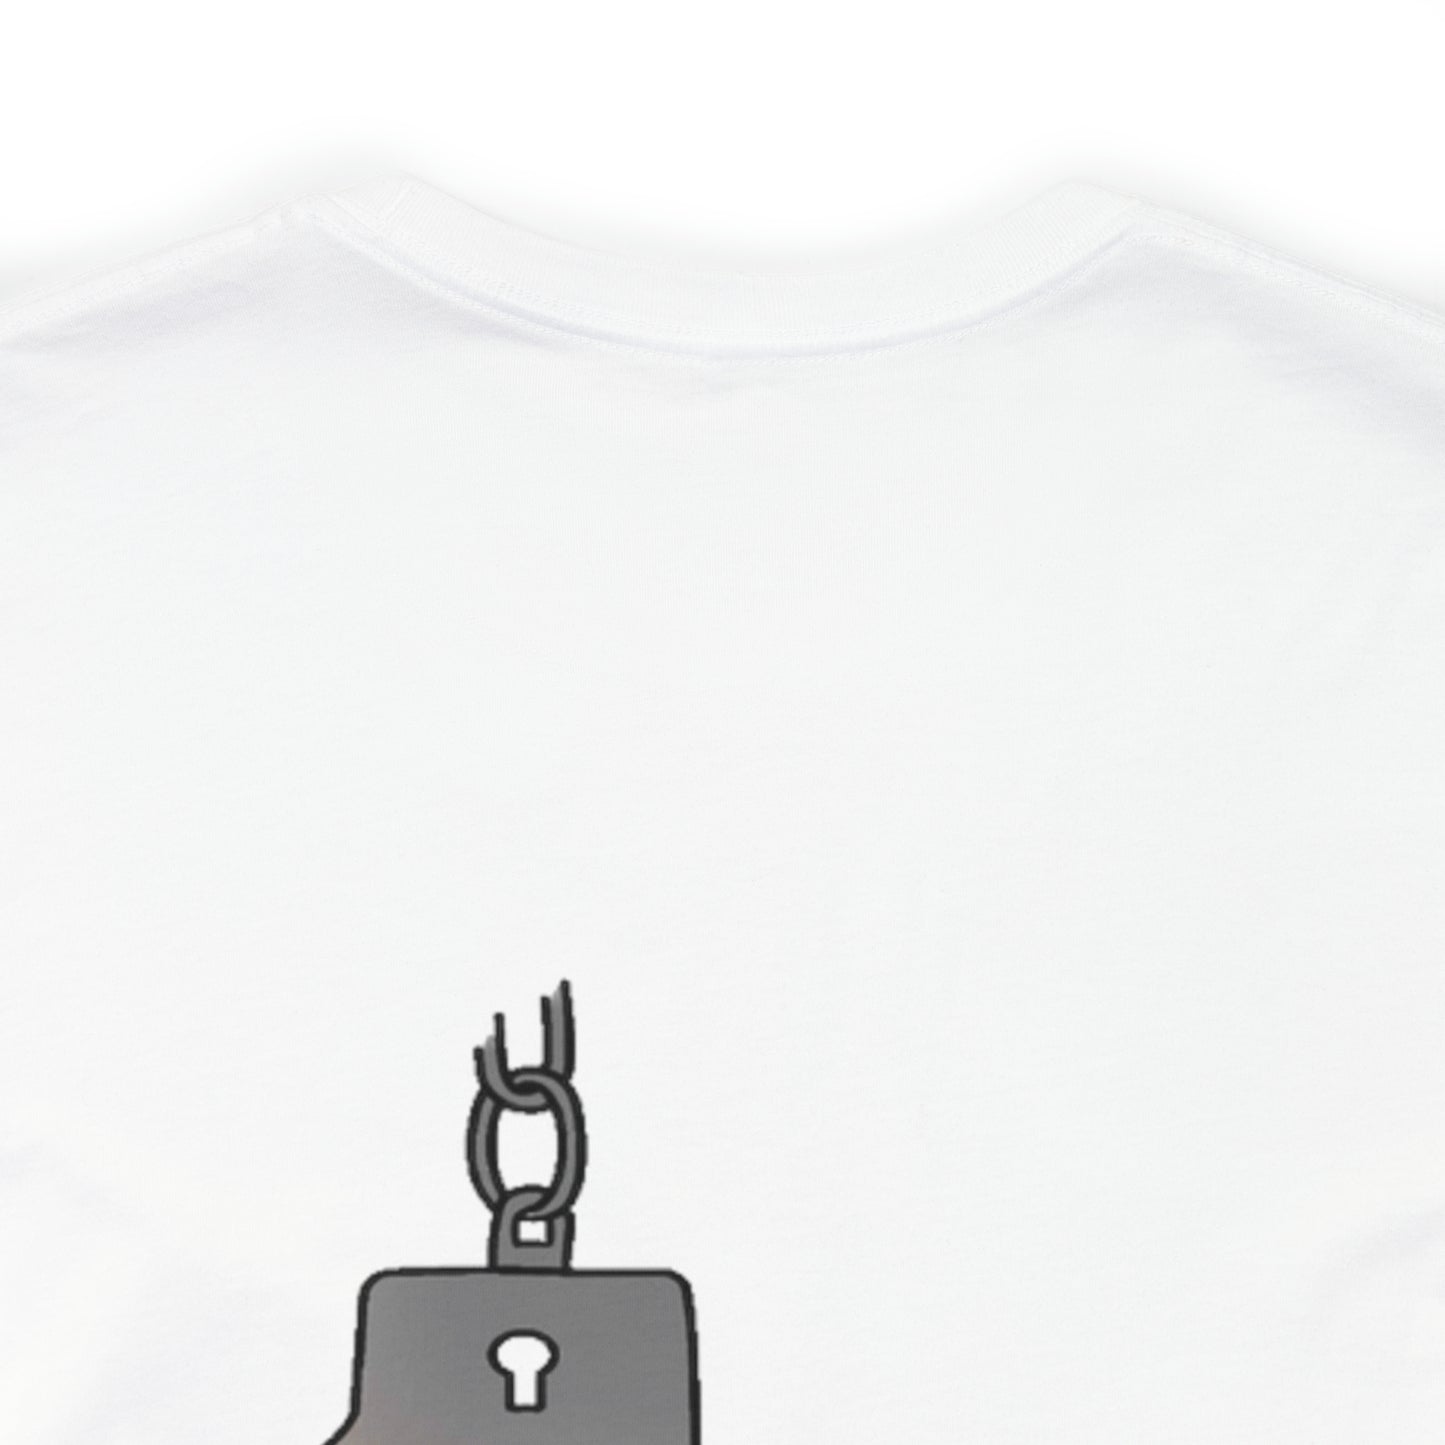 Con-Code logo t-shirt